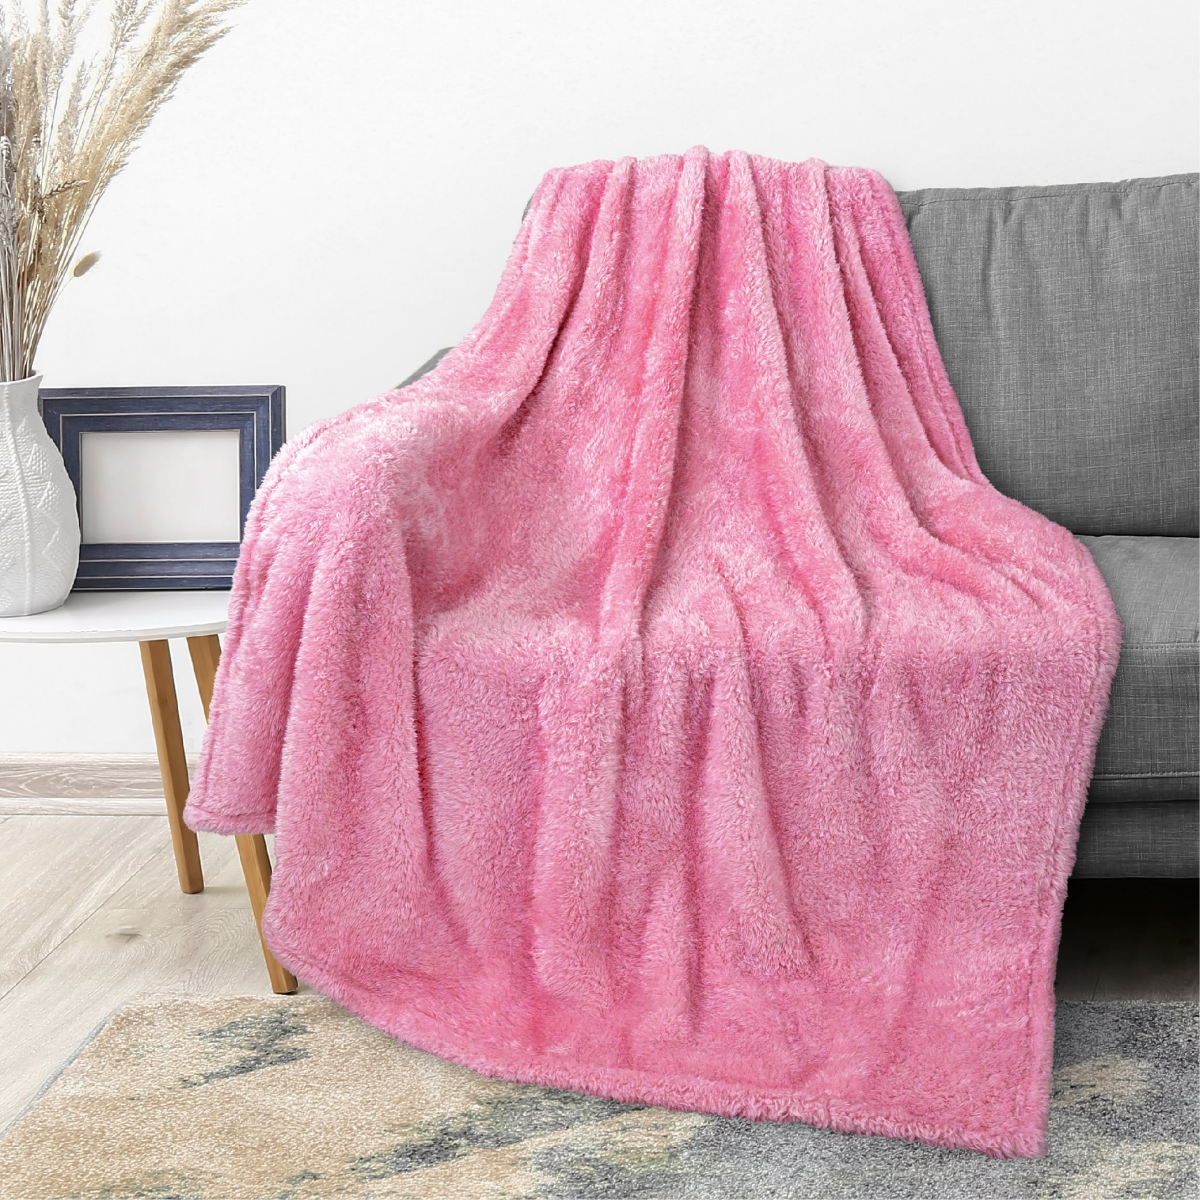 pink velvet blanket on gray couch